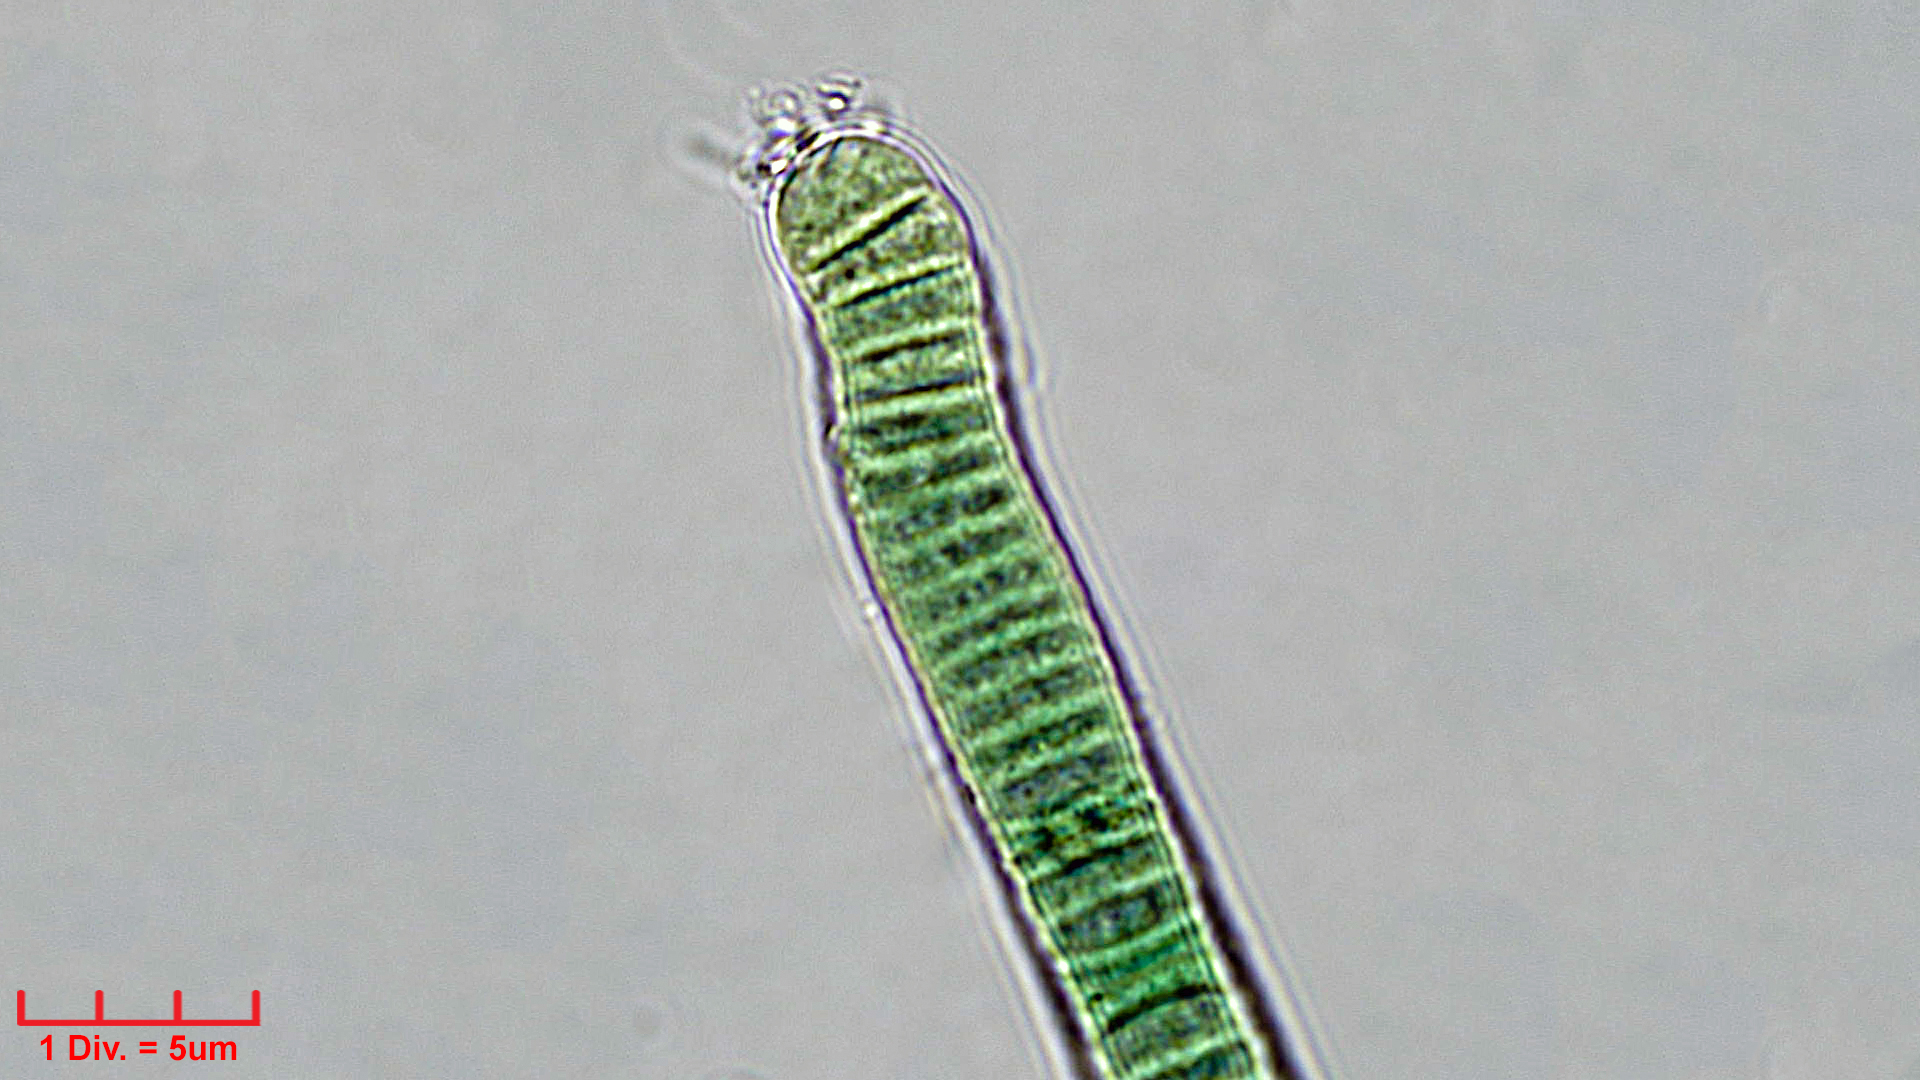 Cyanobacteria/Oscillatoriales/Oscillatoriaceae/Oscillatoria/curviceps/oscillatoria-curviceps-183.jpg